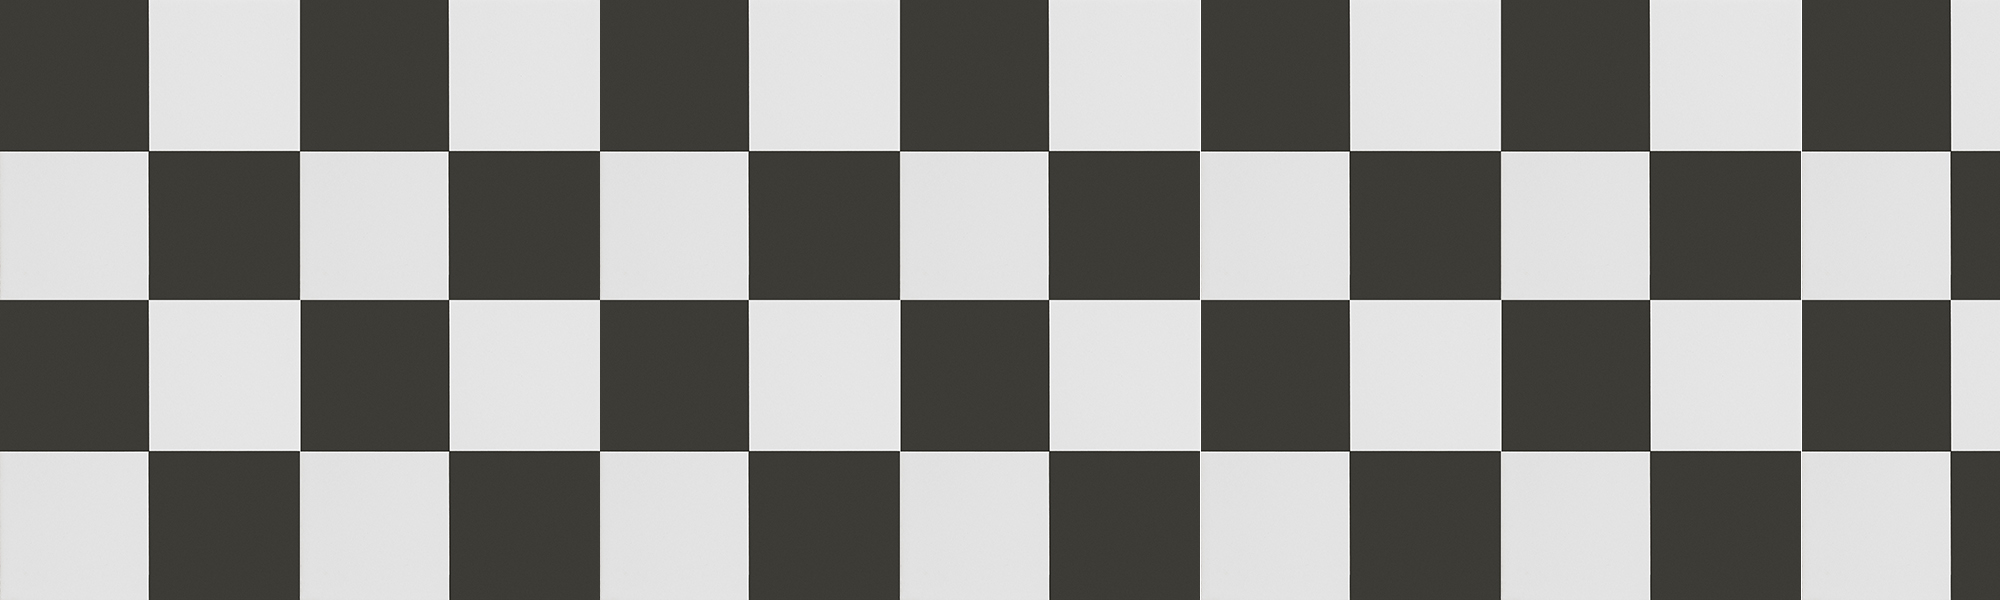 Black White Checker 